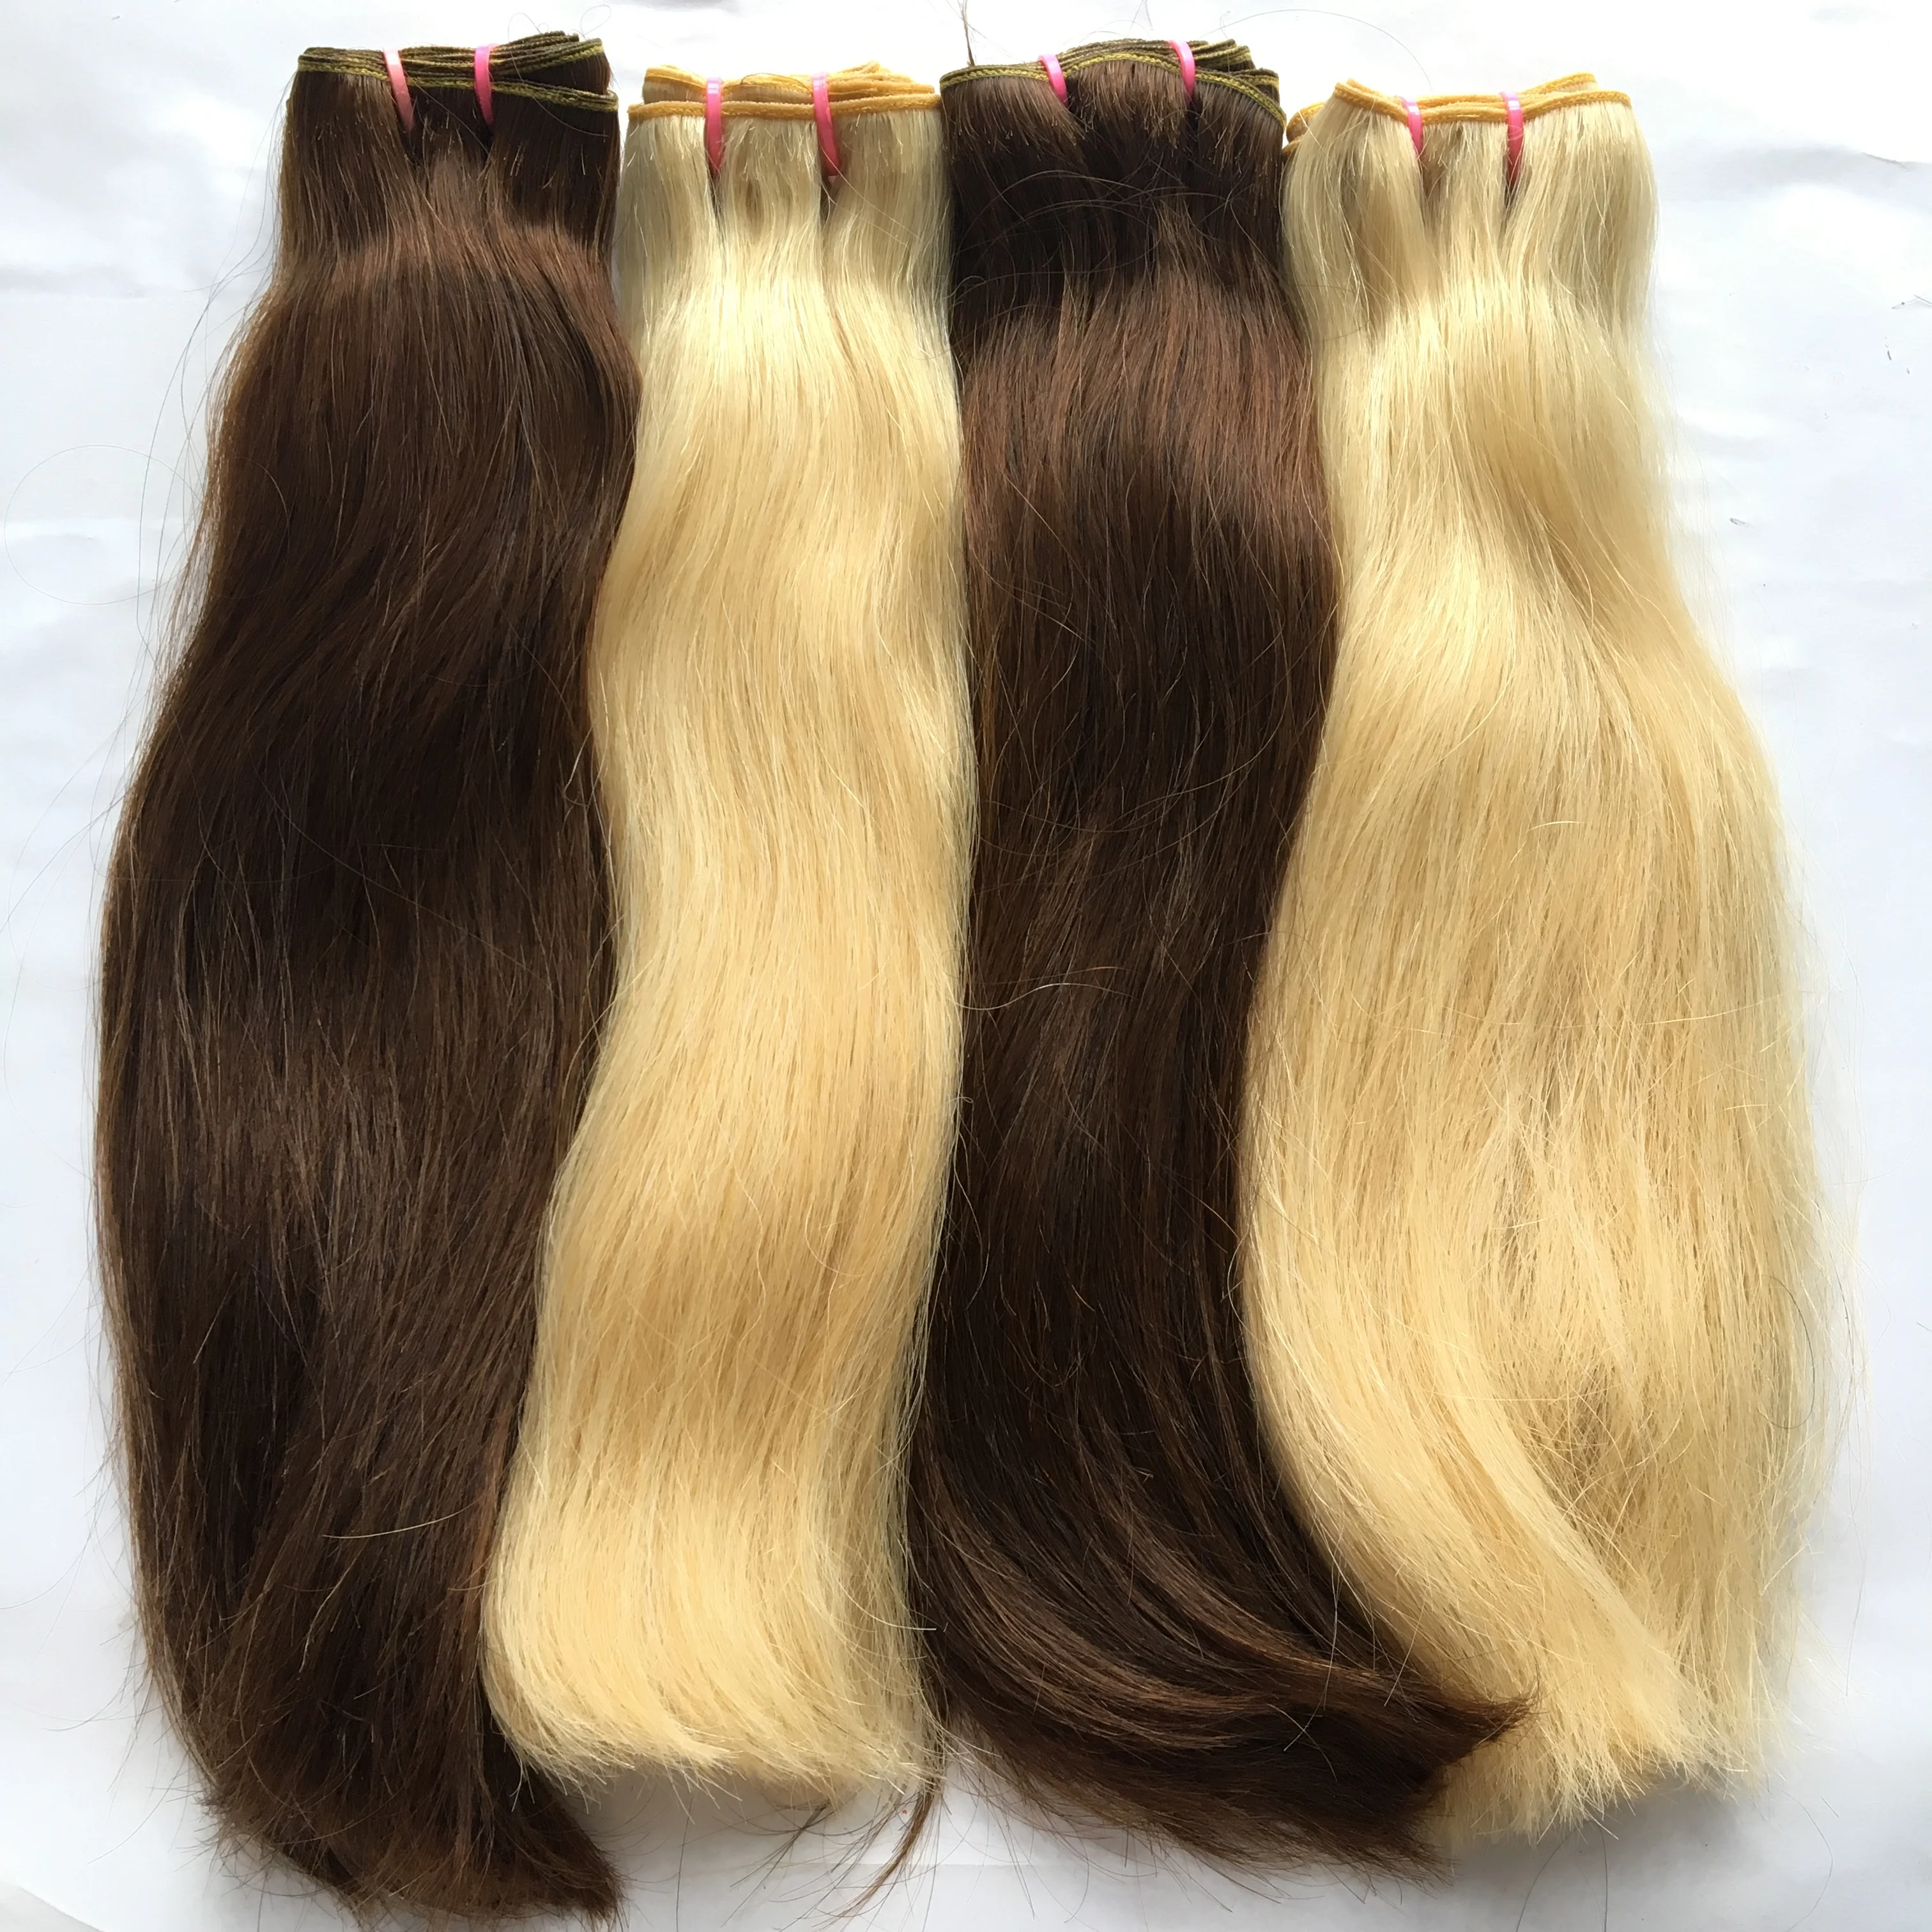 ハニーブラウンブロンドカラーヘアエクステンションブラジル人毛セール Buy カラー毛延長 色の髪 ブラジル人毛 Product On Alibaba Com